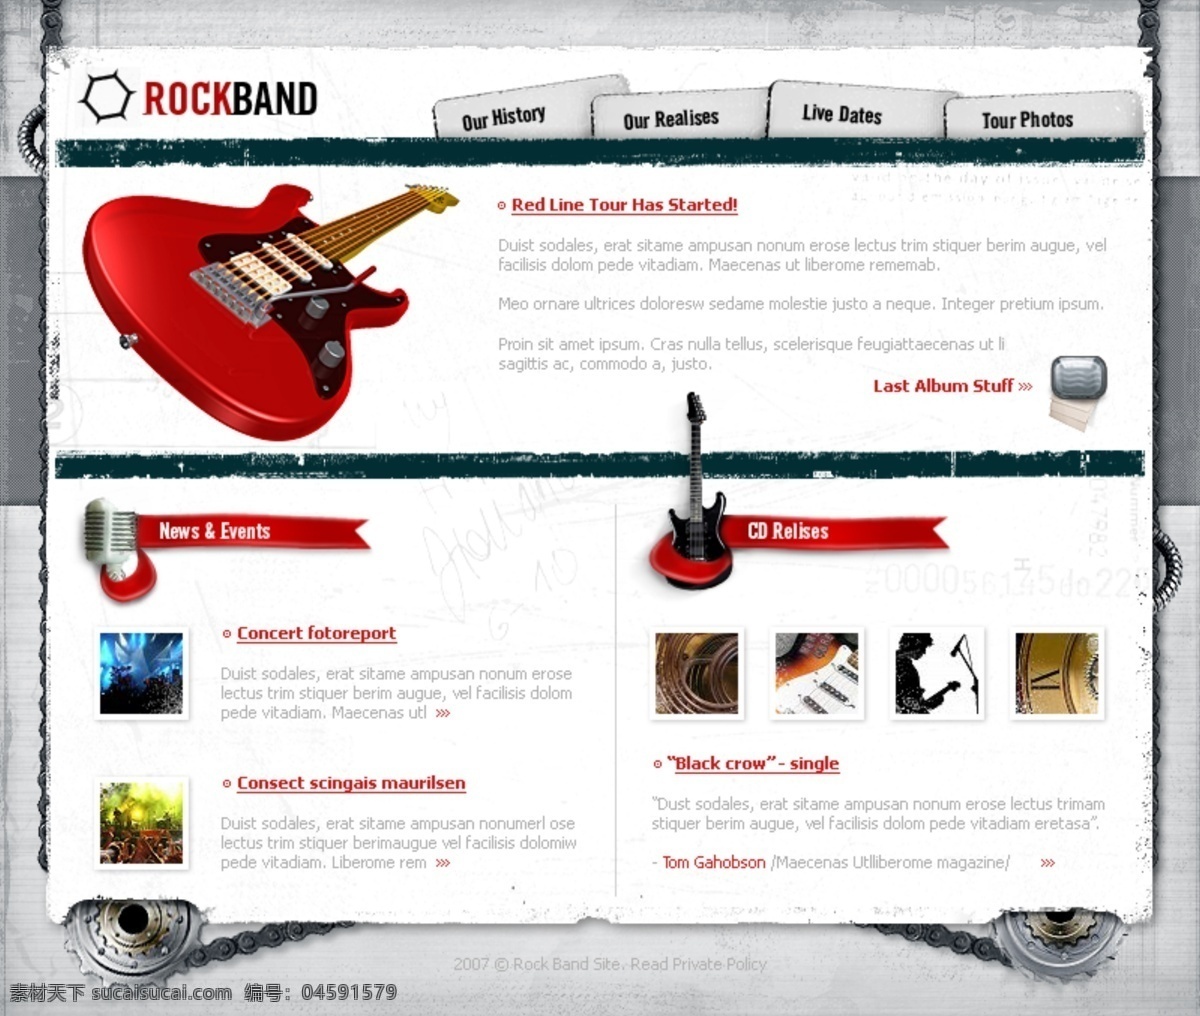 吉他 摇滚 乐团 网页模板 分层 乐队 欧美风格 摇滚乐团 网页素材